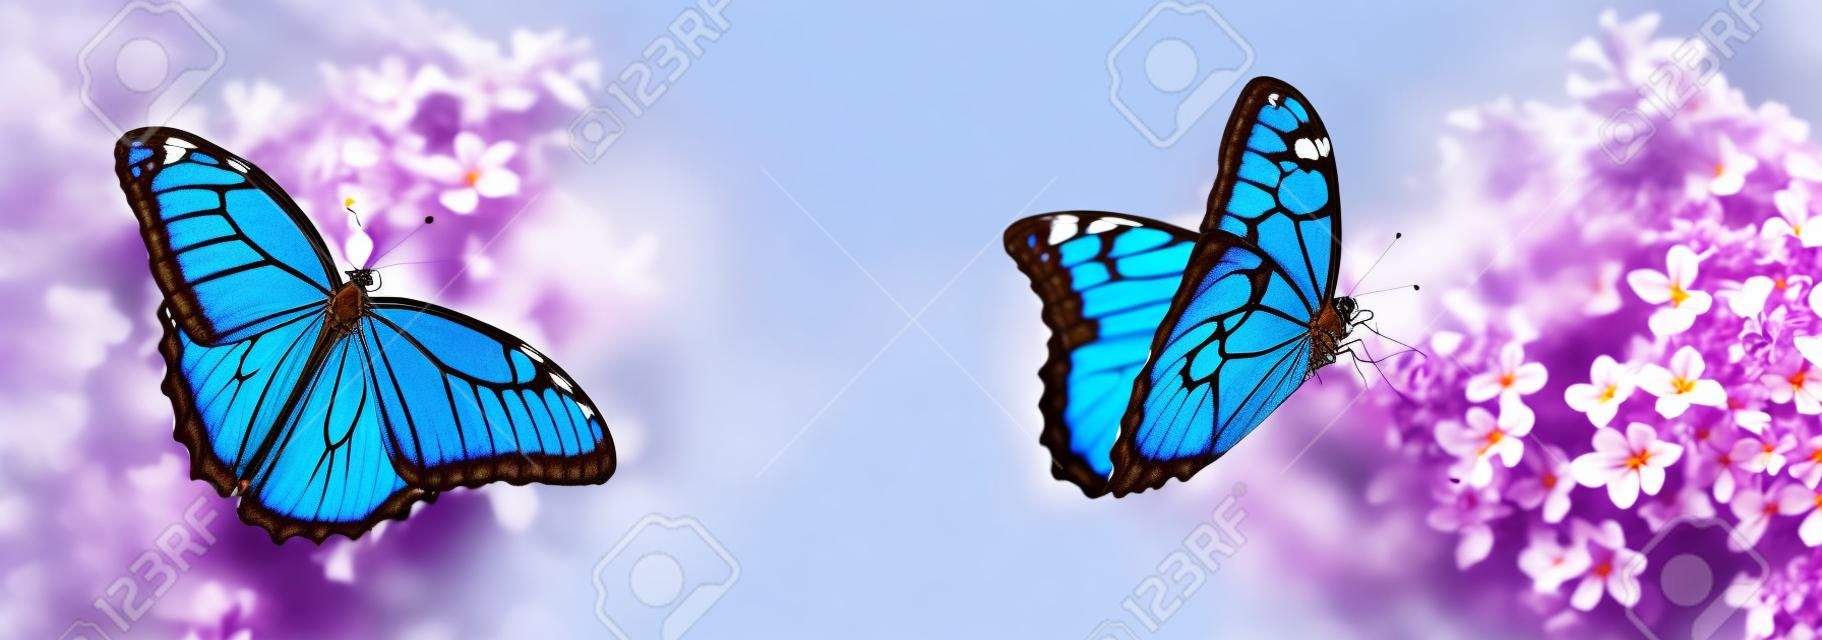 Incredibili farfalle morpho comuni su fiori lilla in giardino, banner design